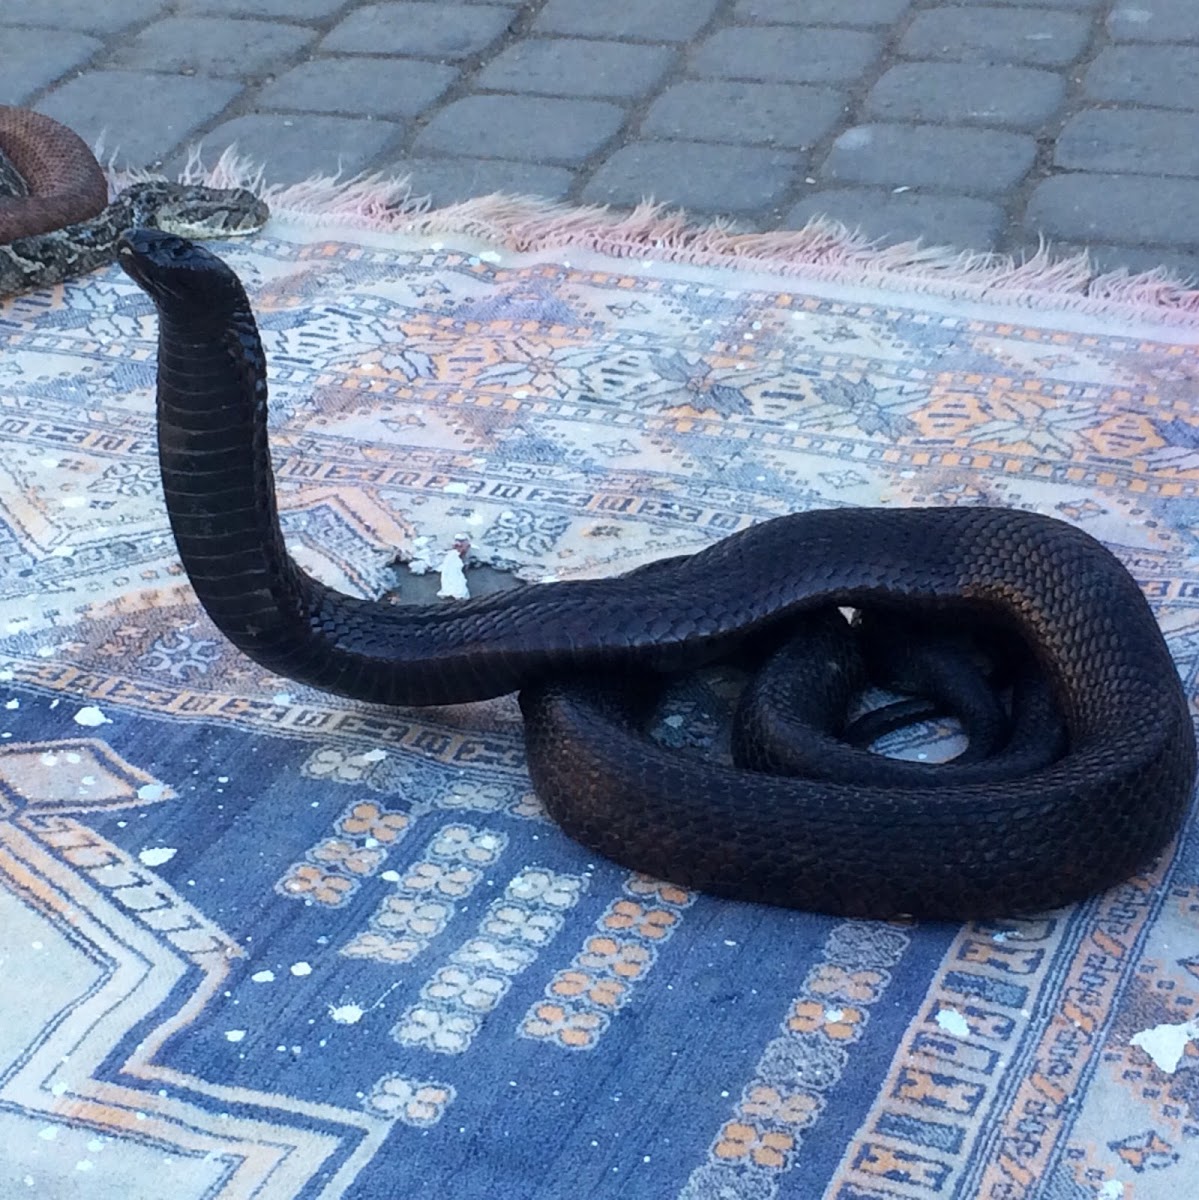 Desert Cobra